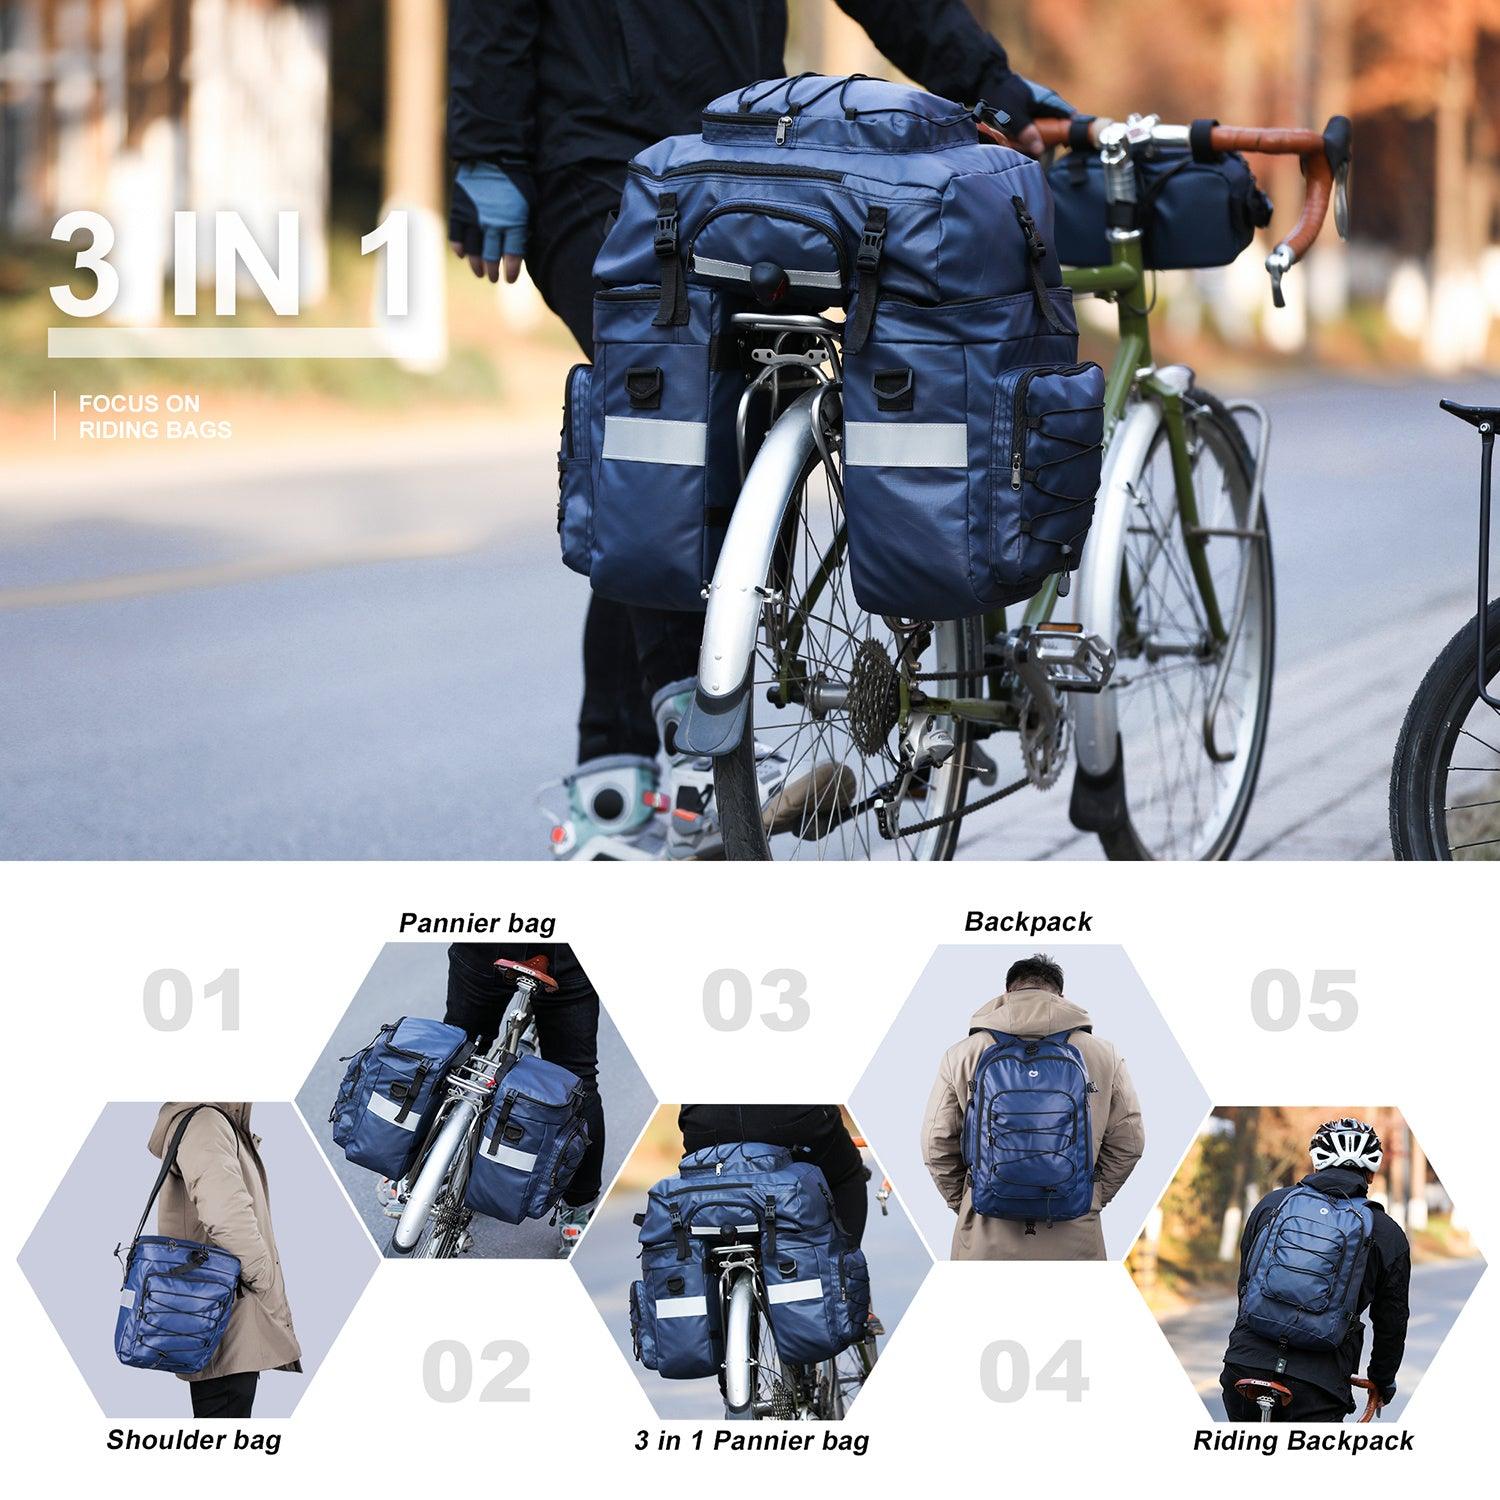 LazyPro LB2 Bike Bag Bike Pannier Bag Set, for Bicycle Cargo Rack Saddle Bag Shoulder Bag Laptop Pannier Rack Bicycle Bag Professional Cycling Accessories Luggage bag ab.65L - Lazy Pro